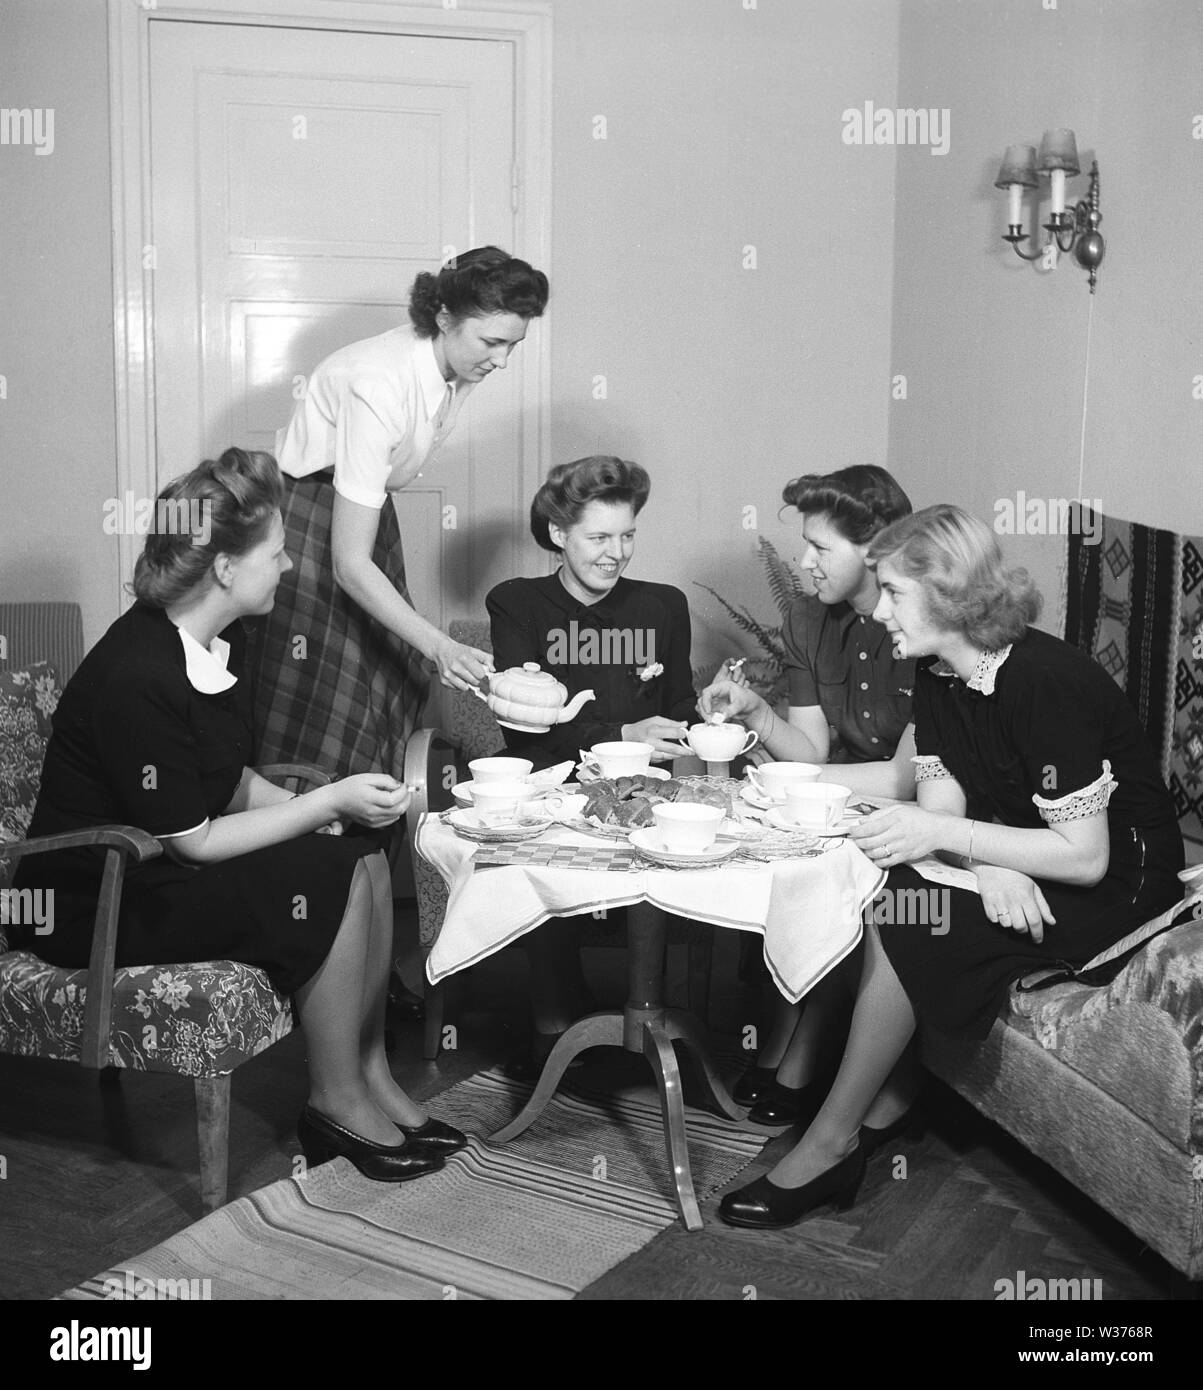 Temps de thé en 1940s. Un groupe de jeunes femmes s'amusent à se fika autour d'une table avec des tasses à thé et des gâteaux. L'hôtesse verse le thé dans une jolie bouilloire en porcelaine. En 1940s, lorsque seules les femmes se sont rencontrées et ont bu du thé ou du café, était un événement social. Ils pouvaient s'asseoir et discuter, échanger des potins et des nouvelles sans l'implication de leurs hommes ou de leurs enfants. Suède 1945 Kristoffersson Réf. M74-2 Banque D'Images